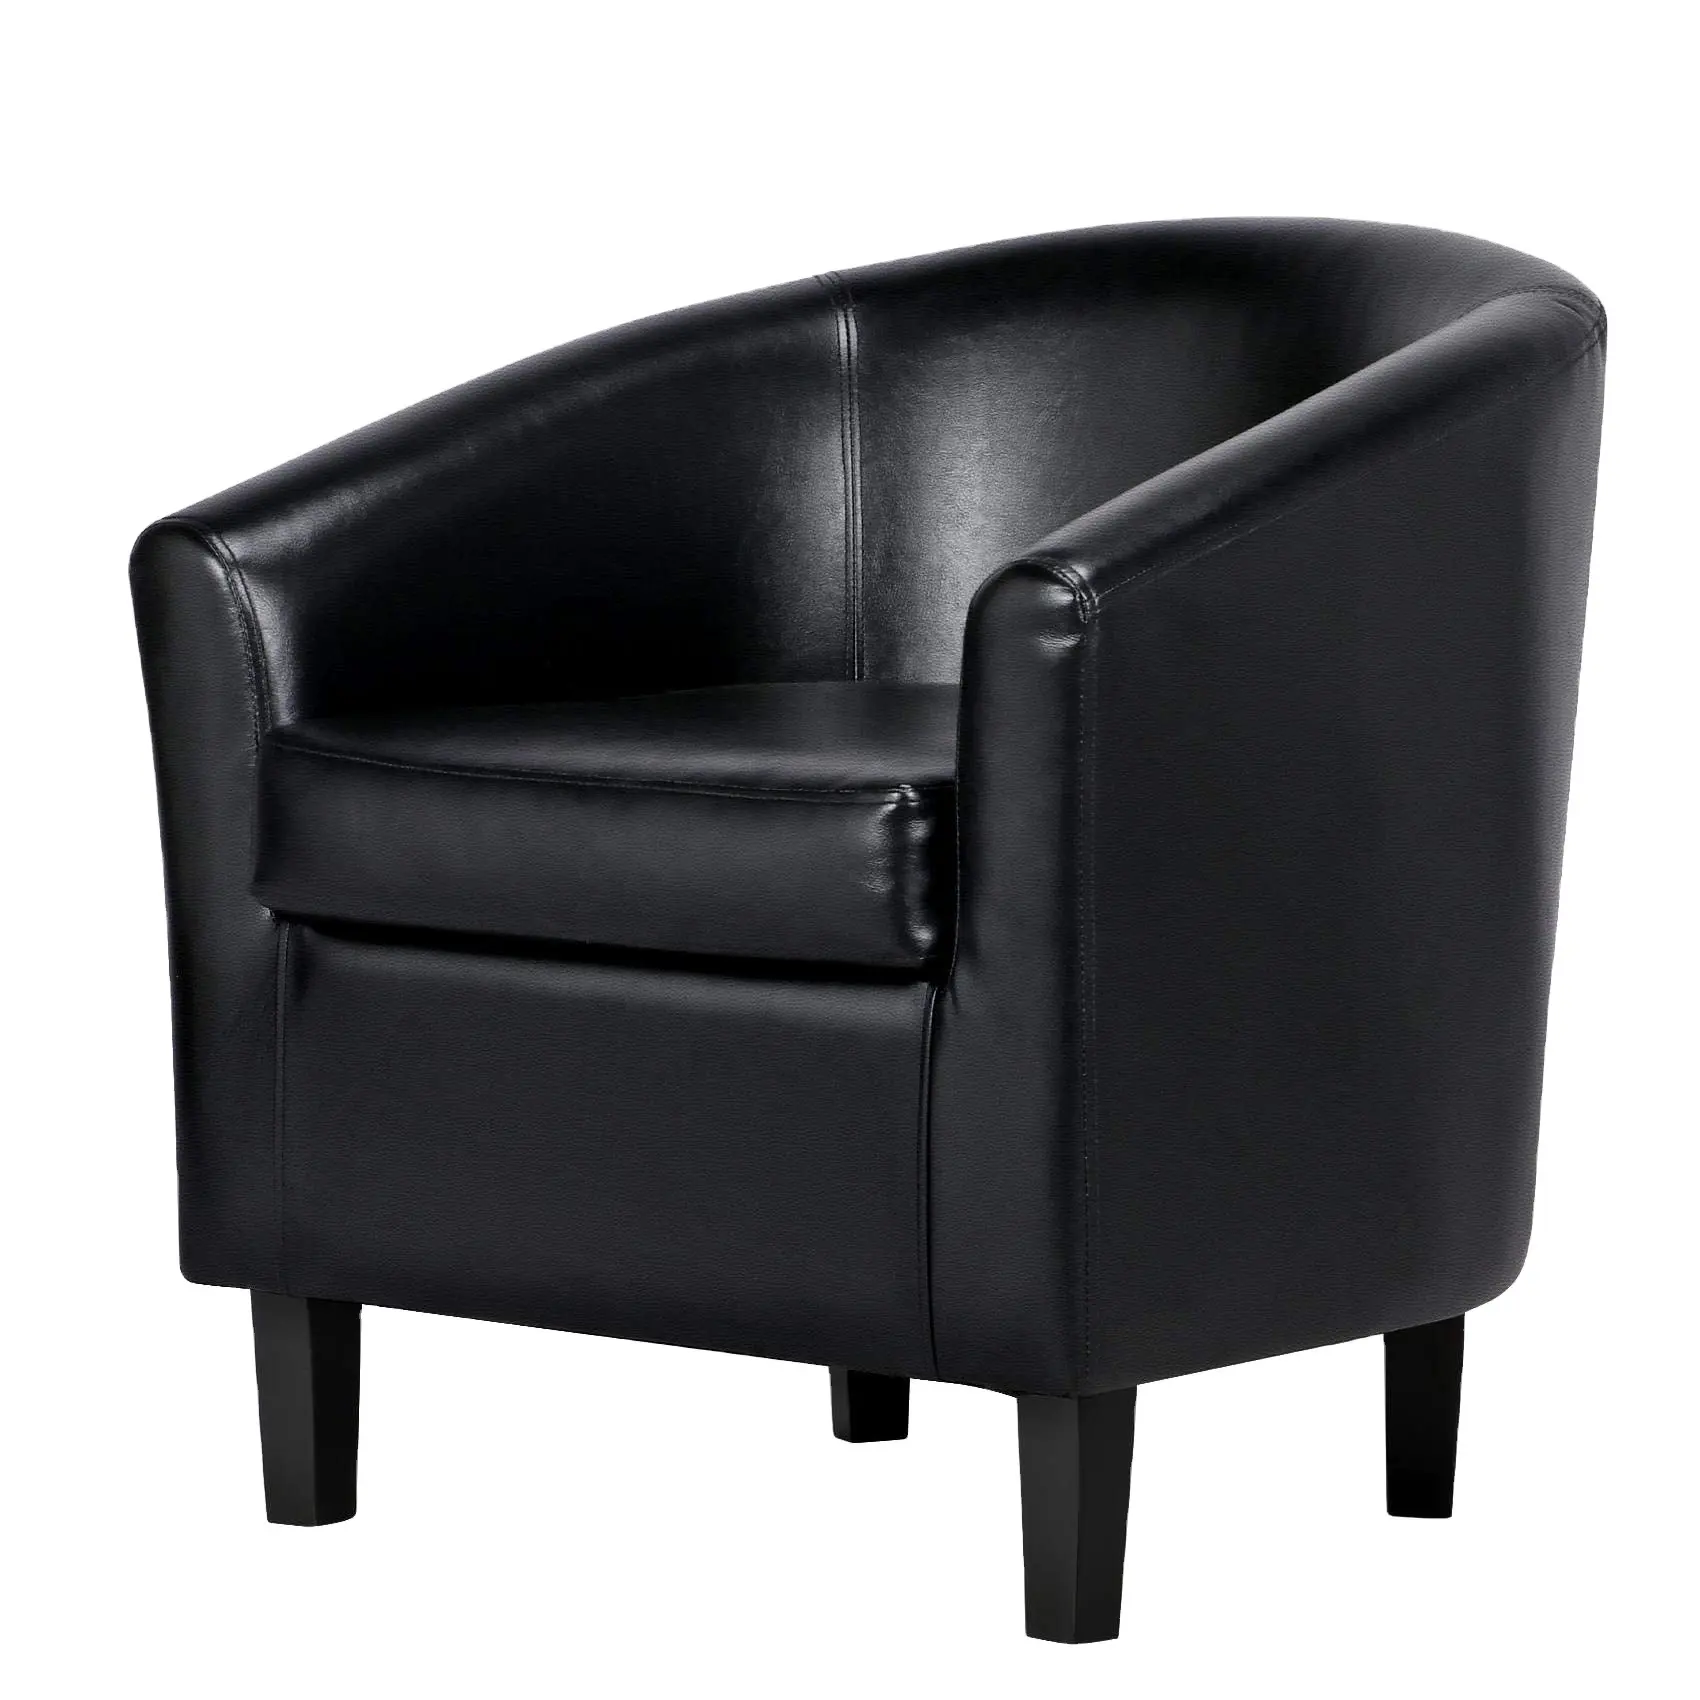 Geeksofa мебель современная кожаная черная плюшевая гостиная кресло с металлическими ножками